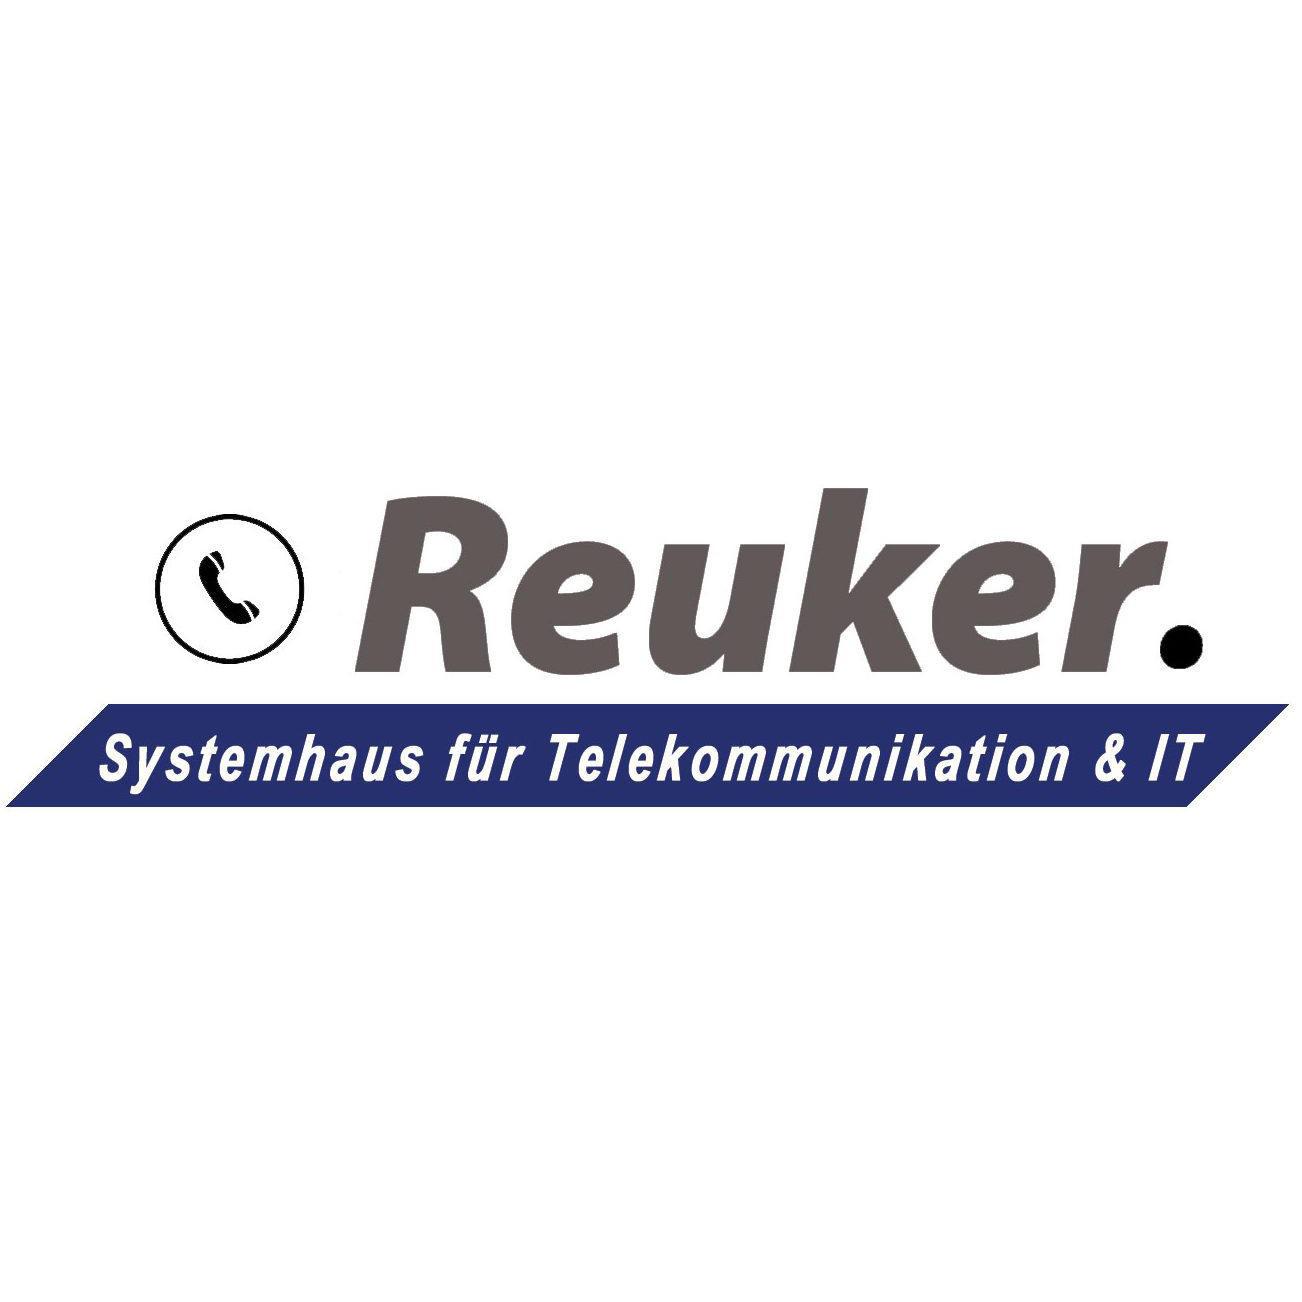 Reuker Systemhaus für Telekommunikation und IT  